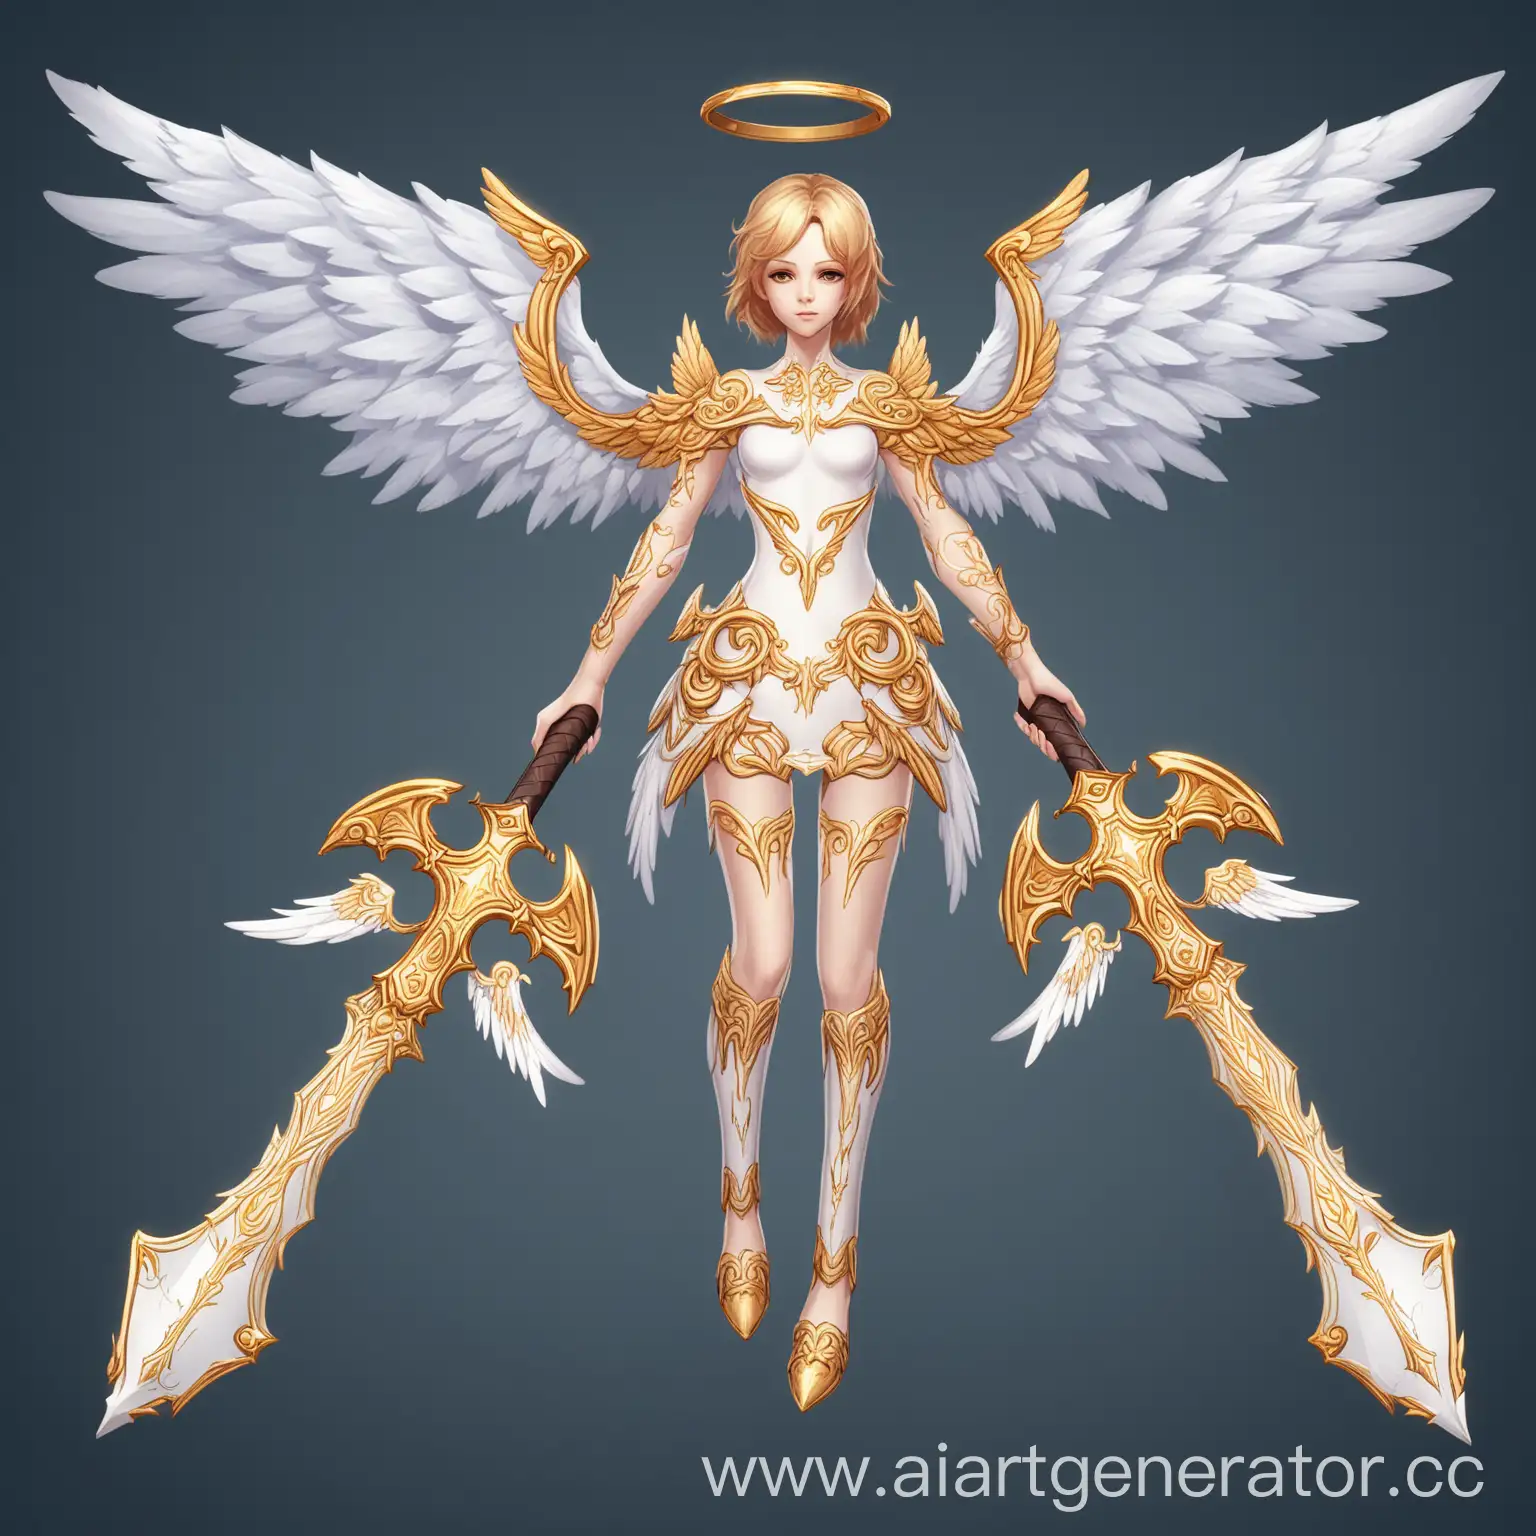 создать скин для оружия в игре в виде ангелов и крыльев